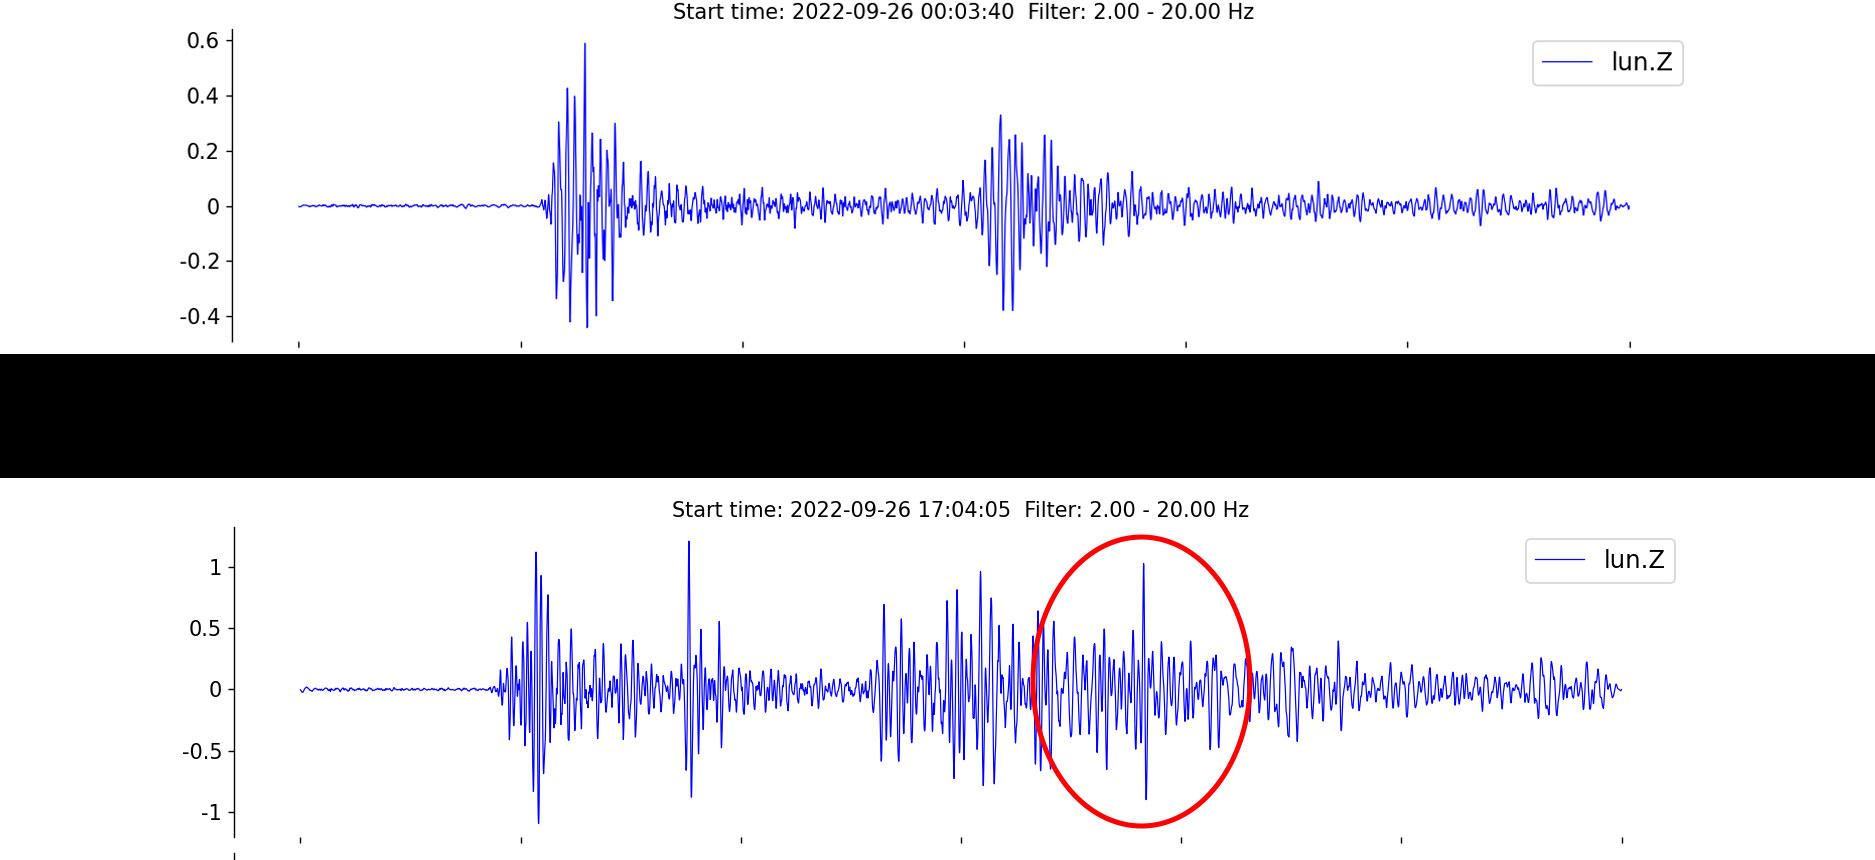 I den röda ringen syns avvikelsen mellan den första och andra detonationen. Enligt seismolog Björn Lund kan det inte uteslutas att den inringade peaken i vågpaketet visar en tredje explosion. Tiderna avser UTC-zonen, två timmar före svensk tid.